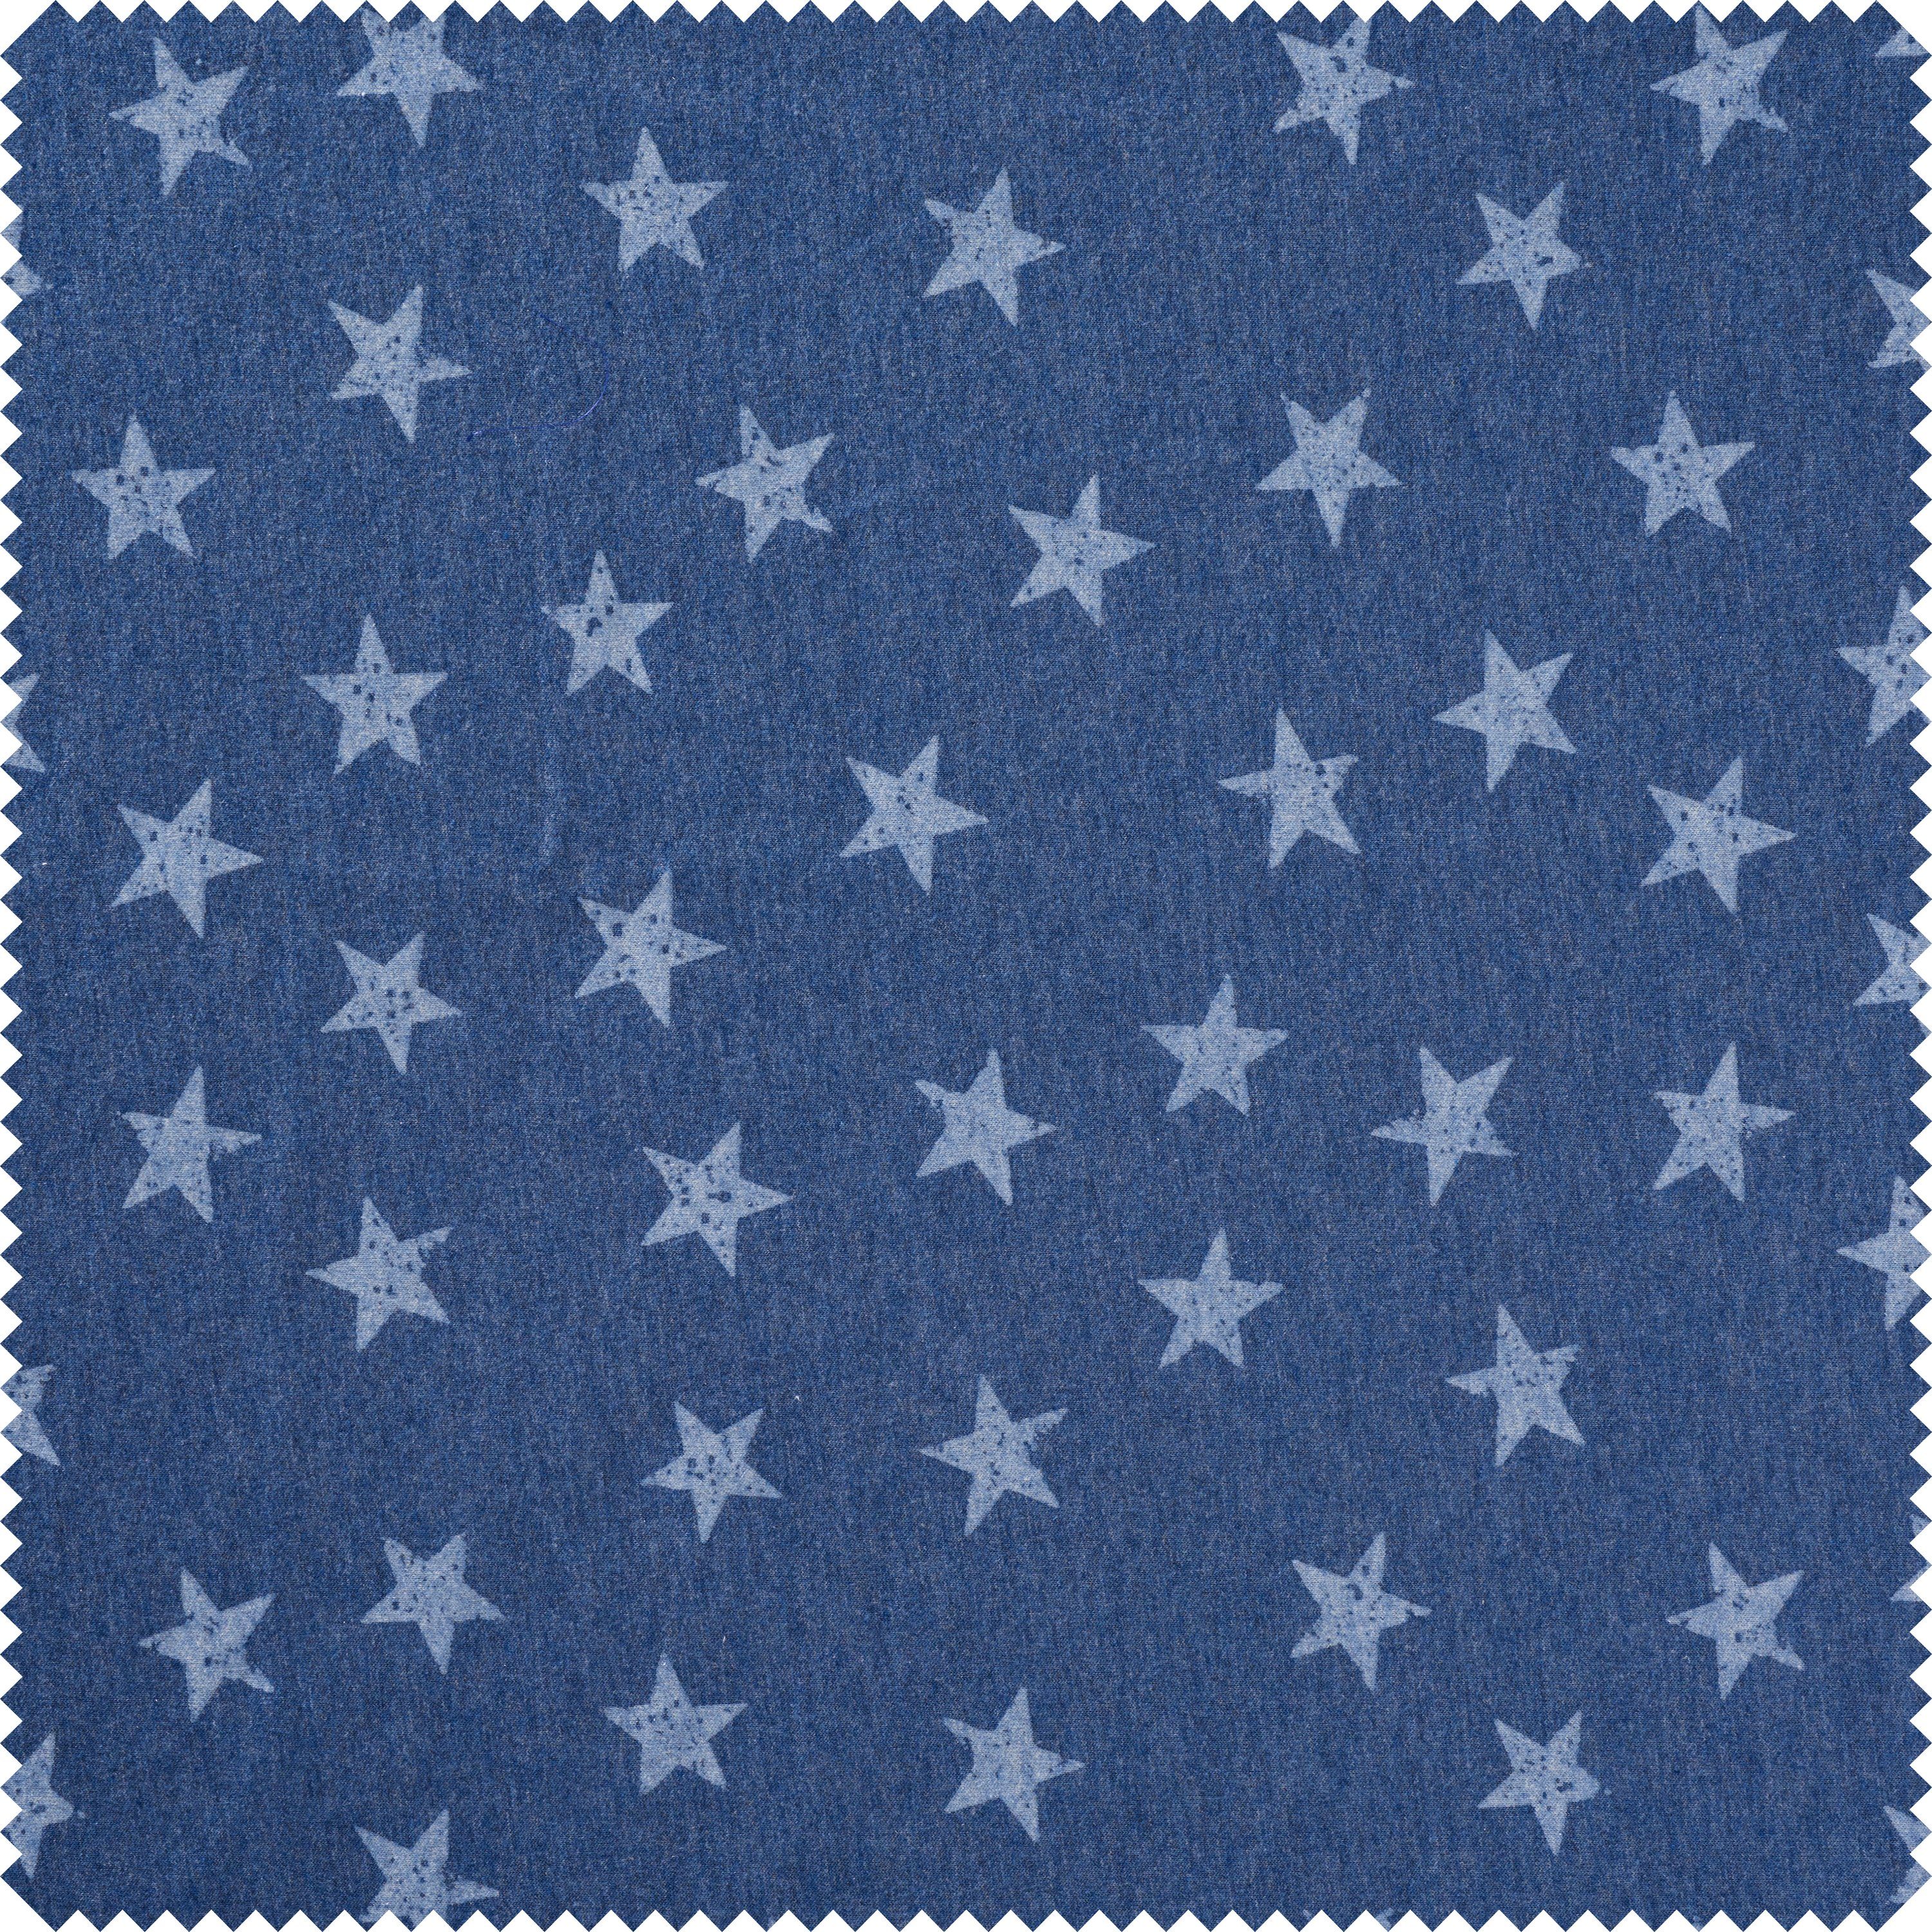 Stoff Sterne, 150 cm breit, Meterware